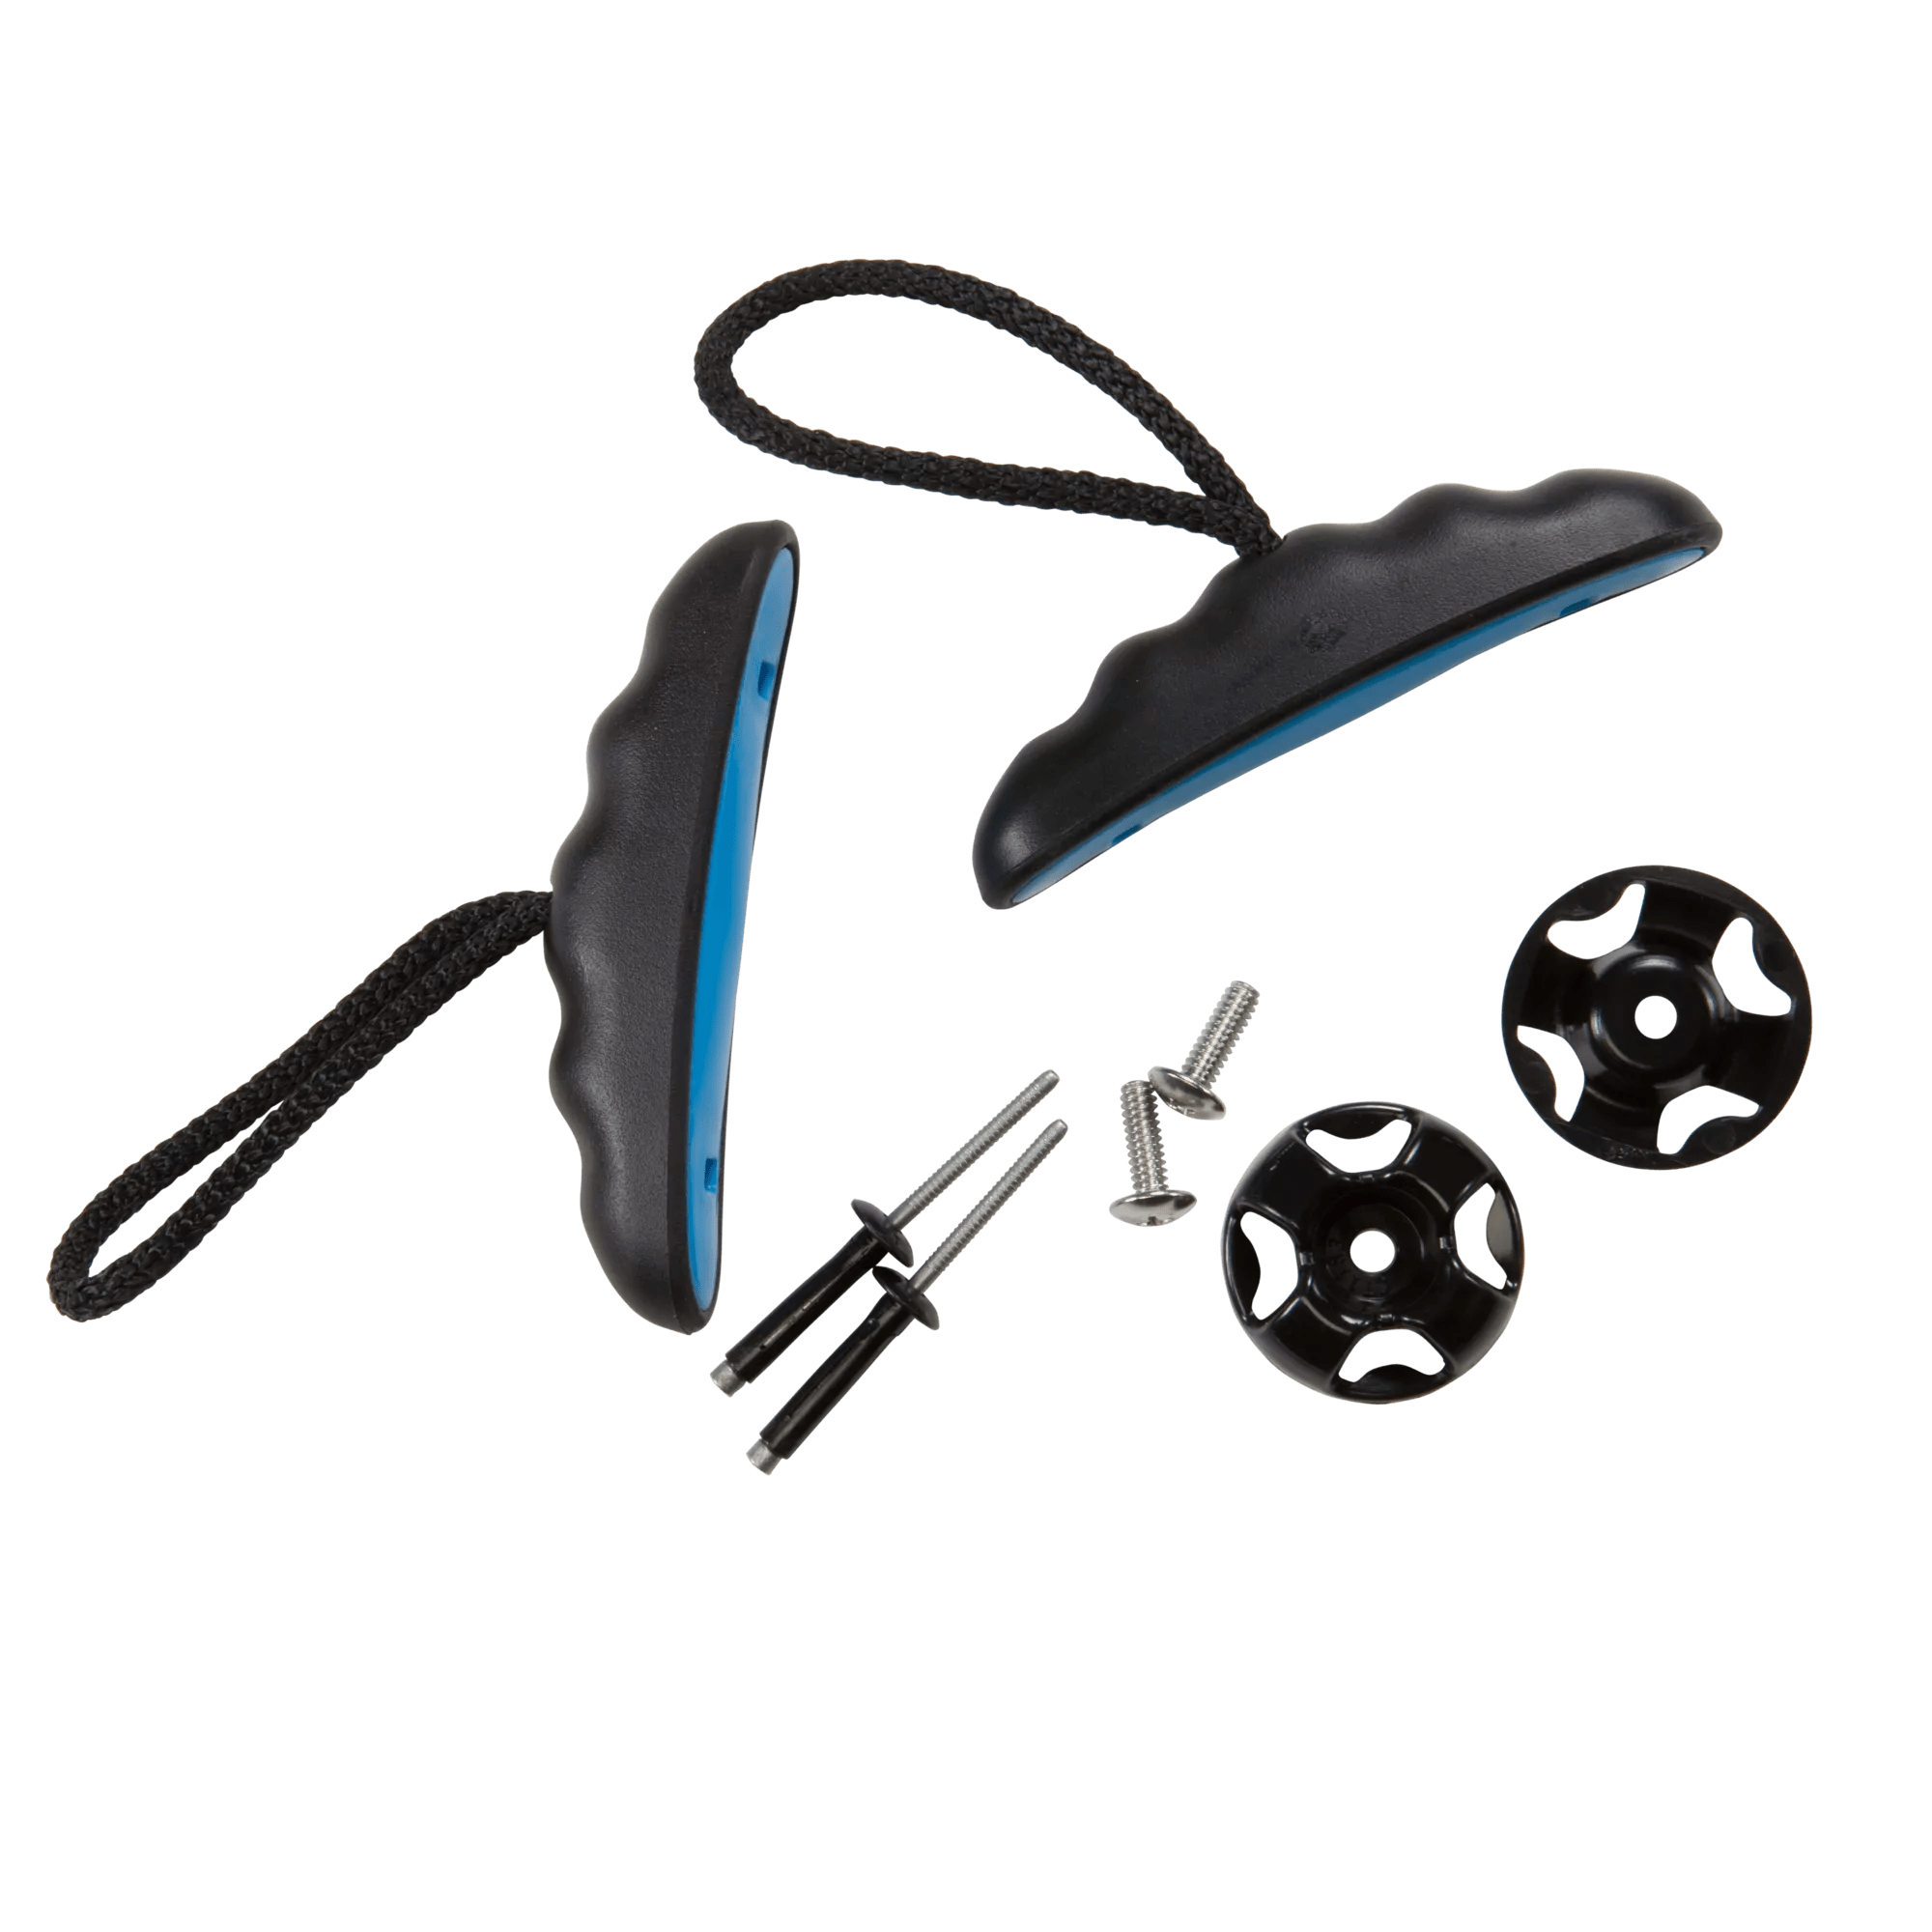 PELICAN - Poignées de transport bleu électrique de 35,6 cm (14 po) pour kayak -  - PS1471 - ISO